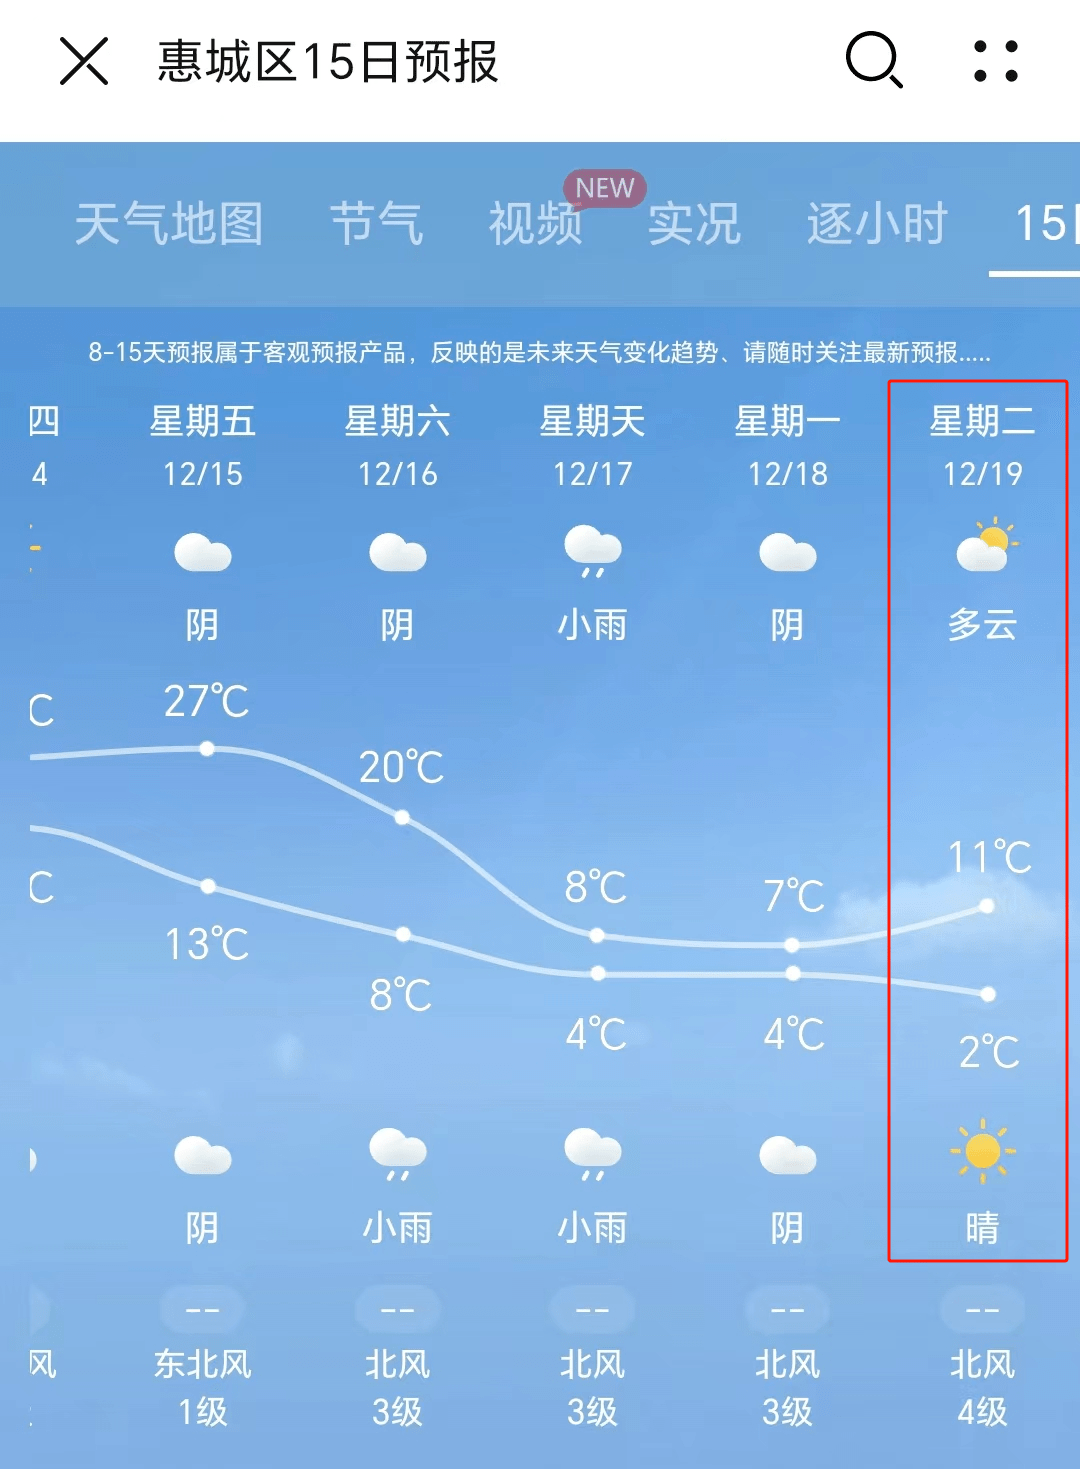 广州最低气温1℃,将现雨夹雪?